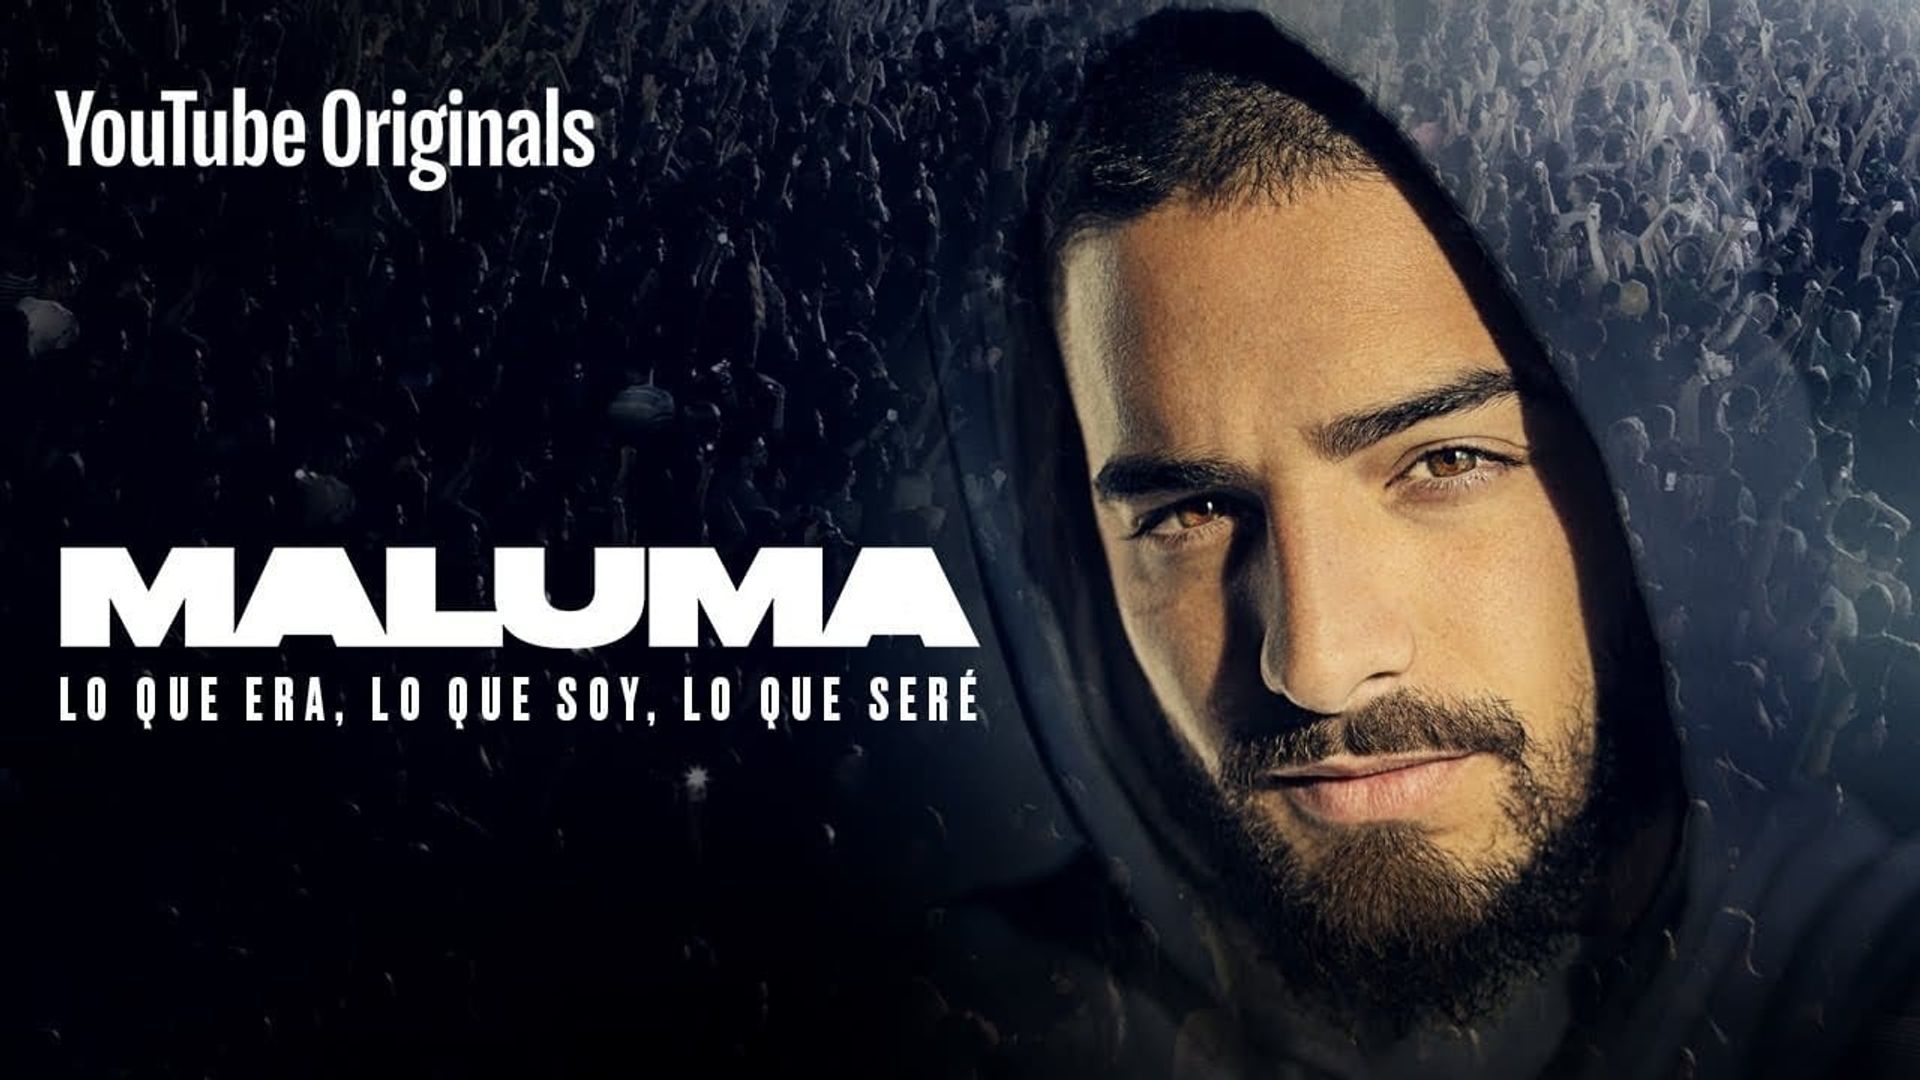 Maluma: Lo Que Era, Lo Que Soy, Lo Que Sere background